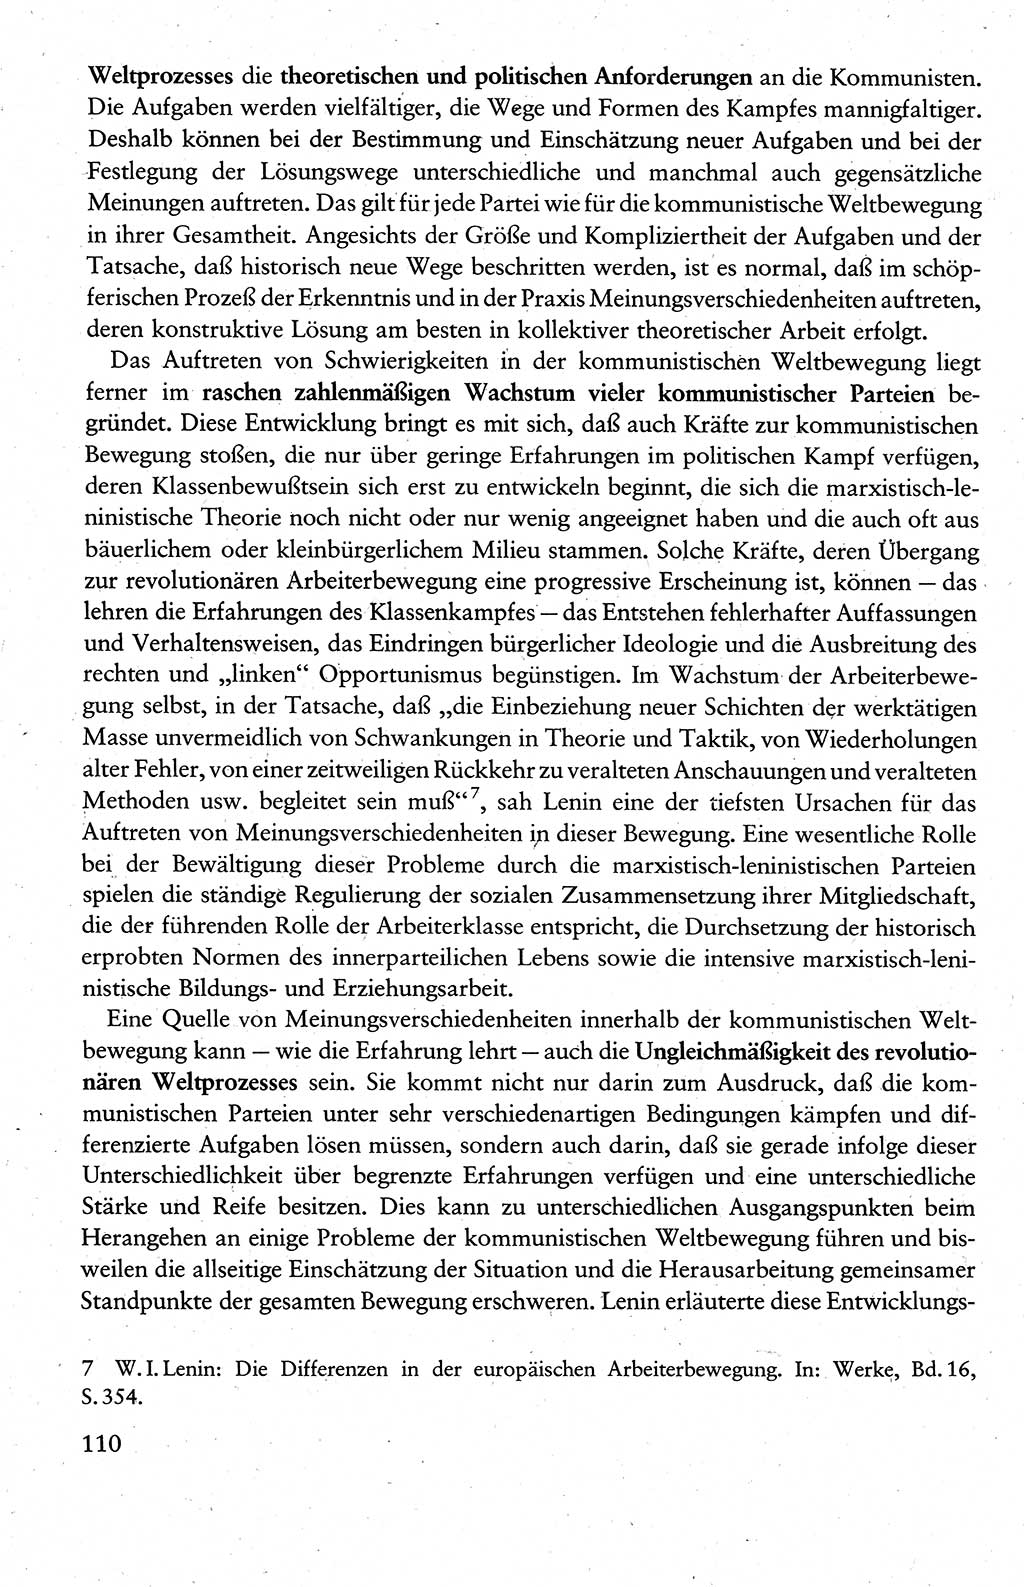 Wissenschaftlicher Kommunismus [Deutsche Demokratische Republik (DDR)], Lehrbuch für das marxistisch-leninistische Grundlagenstudium 1983, Seite 110 (Wiss. Komm. DDR Lb. 1983, S. 110)